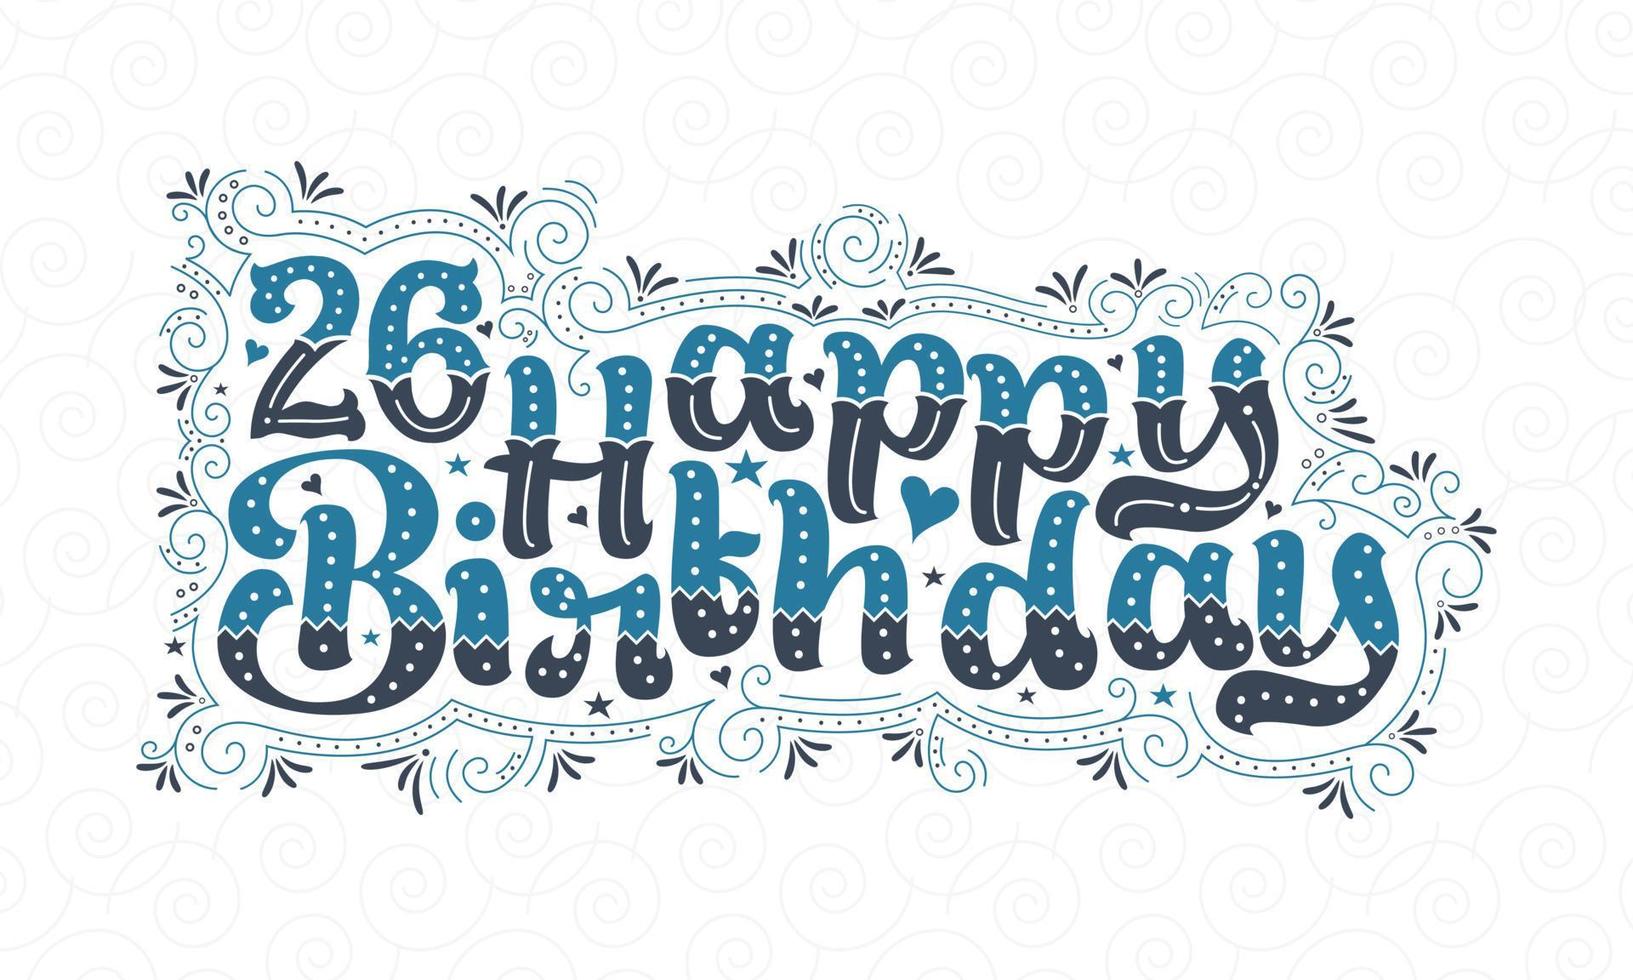 Letras de feliz cumpleaños 26, hermoso diseño tipográfico de cumpleaños de 26 años con puntos, líneas y hojas azules y negros. vector